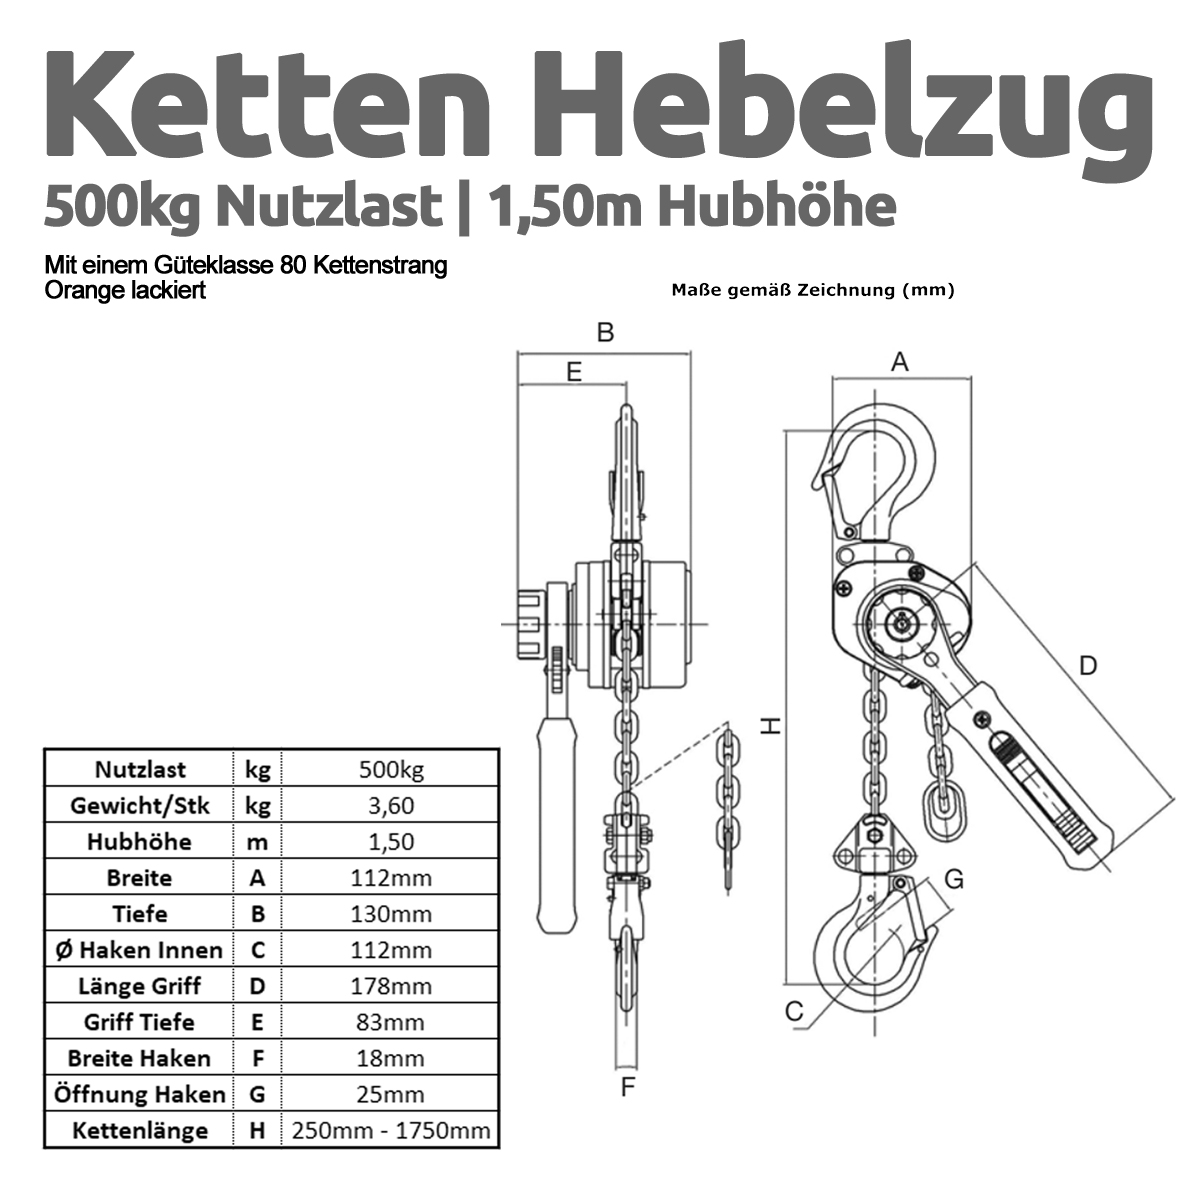 Hebelzug_Grafik_1200